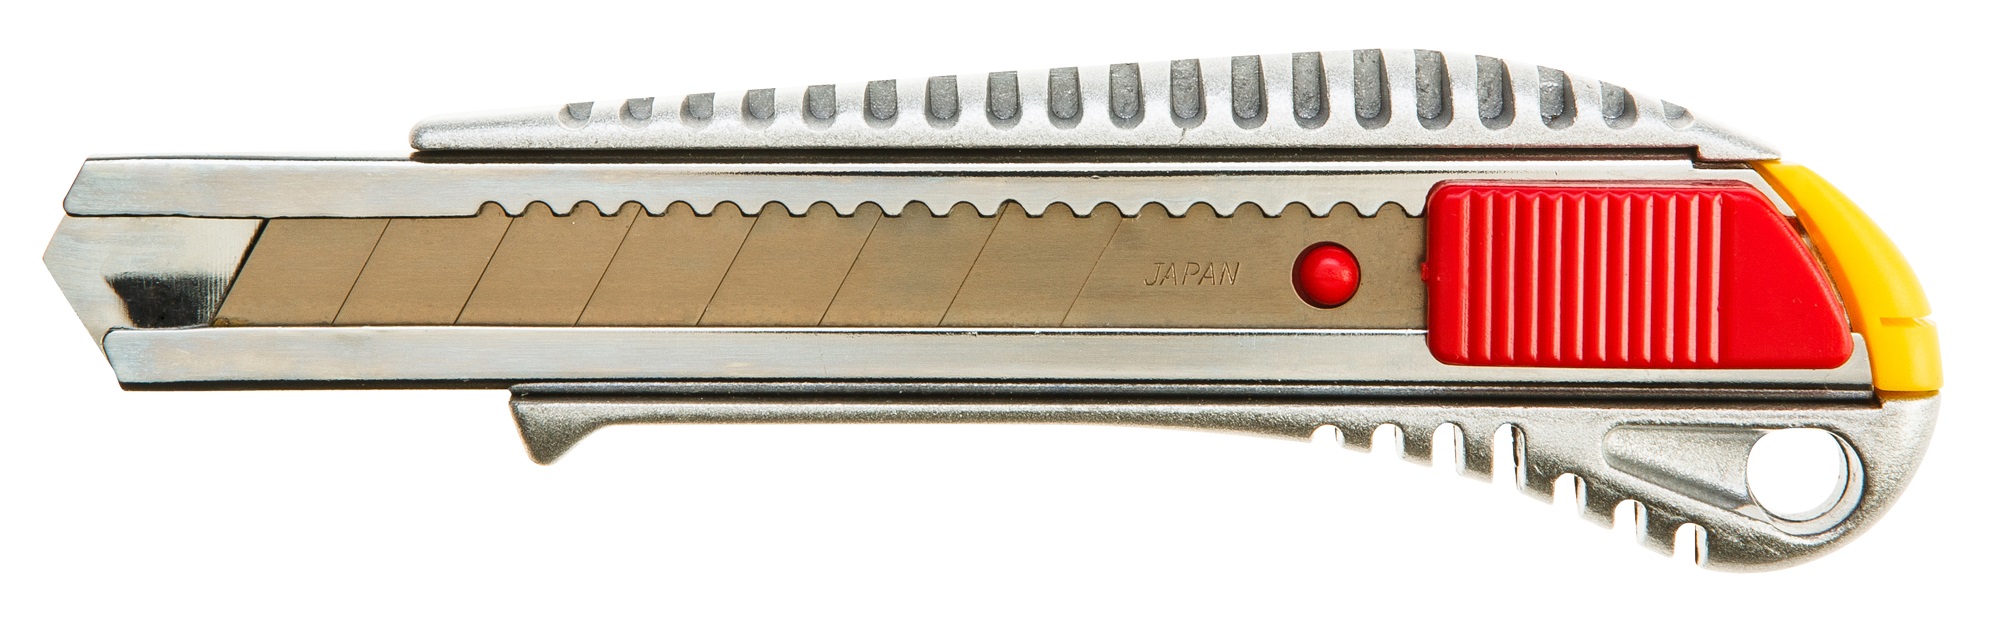 Отзывы нож сегментный Topex 17B128